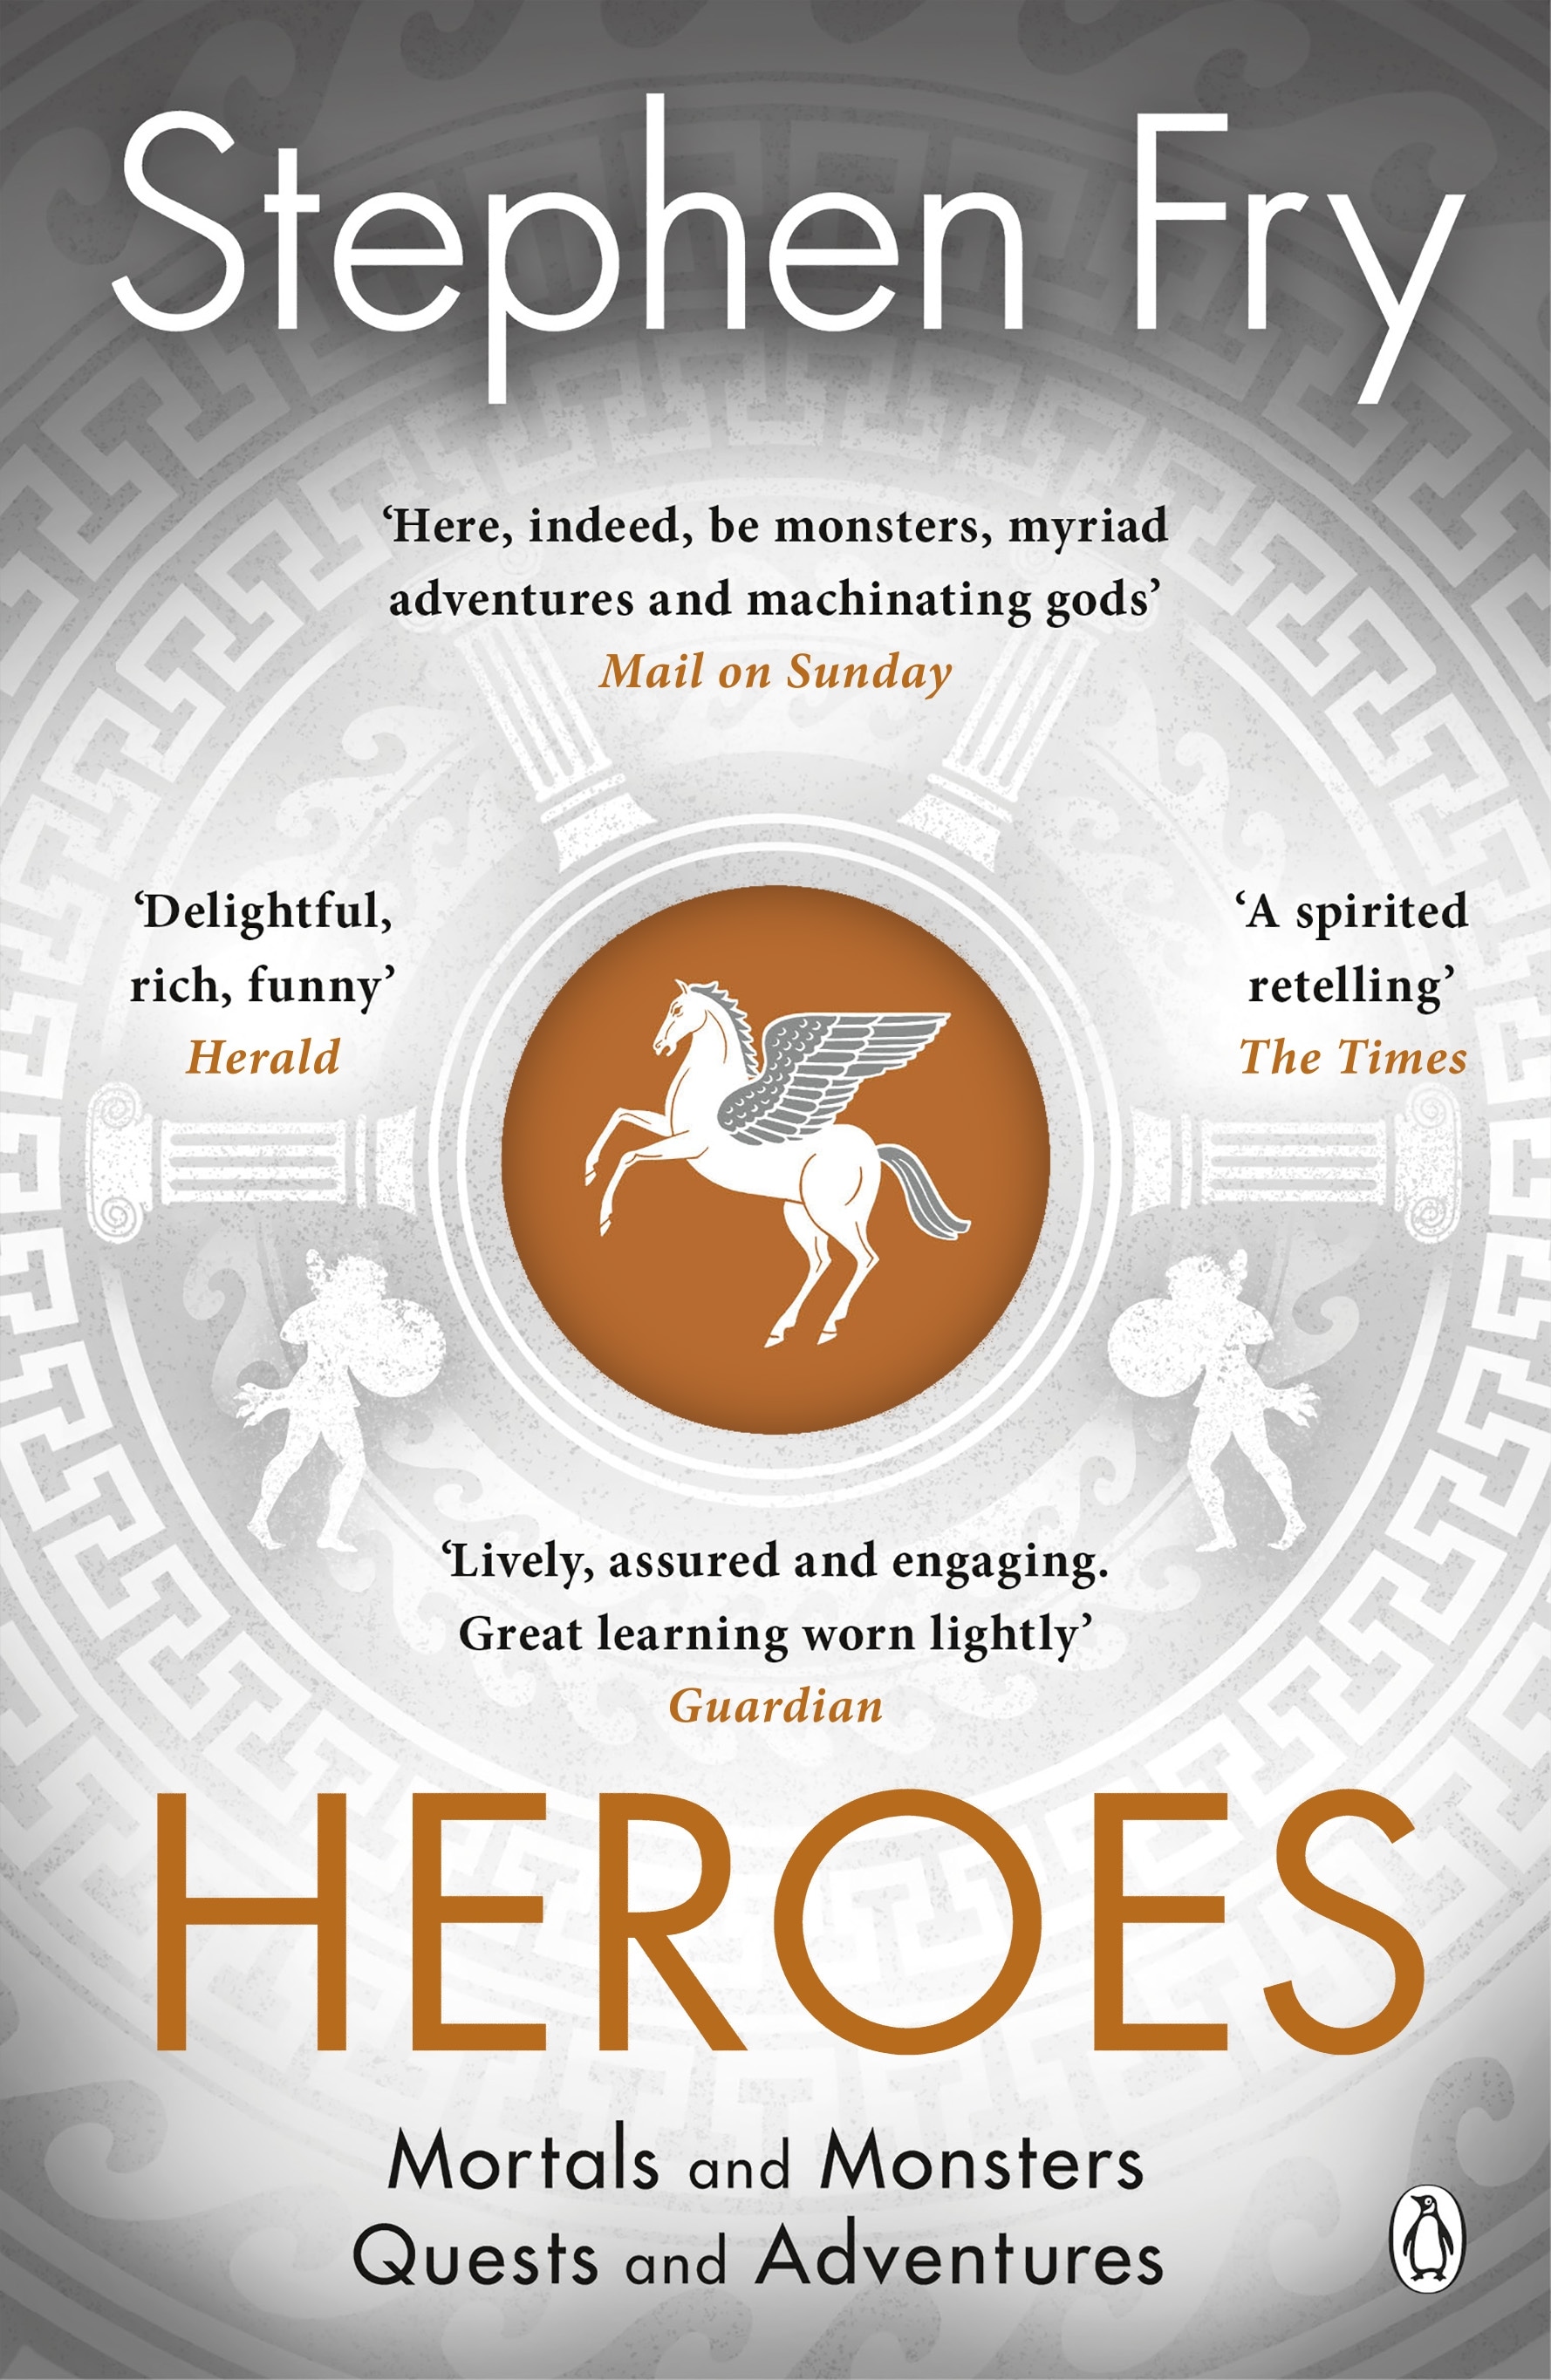 Book “Heroes” by Stephen Fry — June 27, 2019